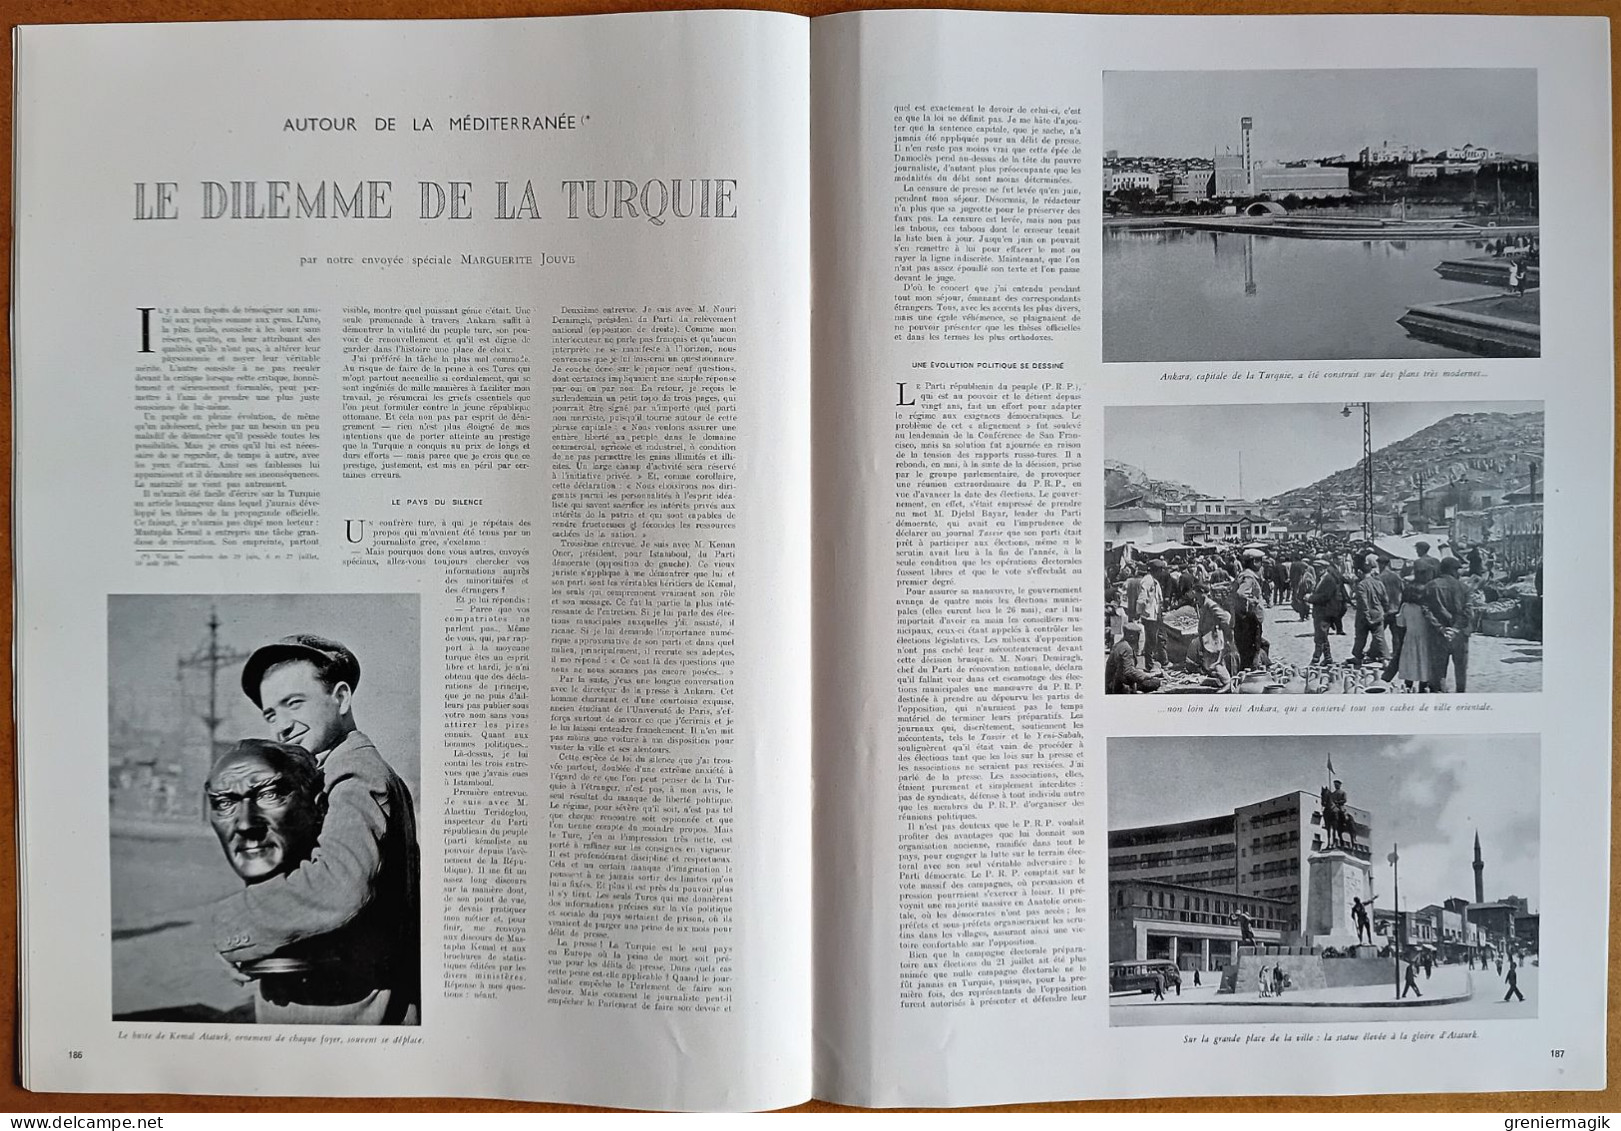 France Illustration N°47 24/08/1946 Haute Cour/Emeute Athens Tennessee/Turquie/Autour de la Conférence de Paris/UNRRA